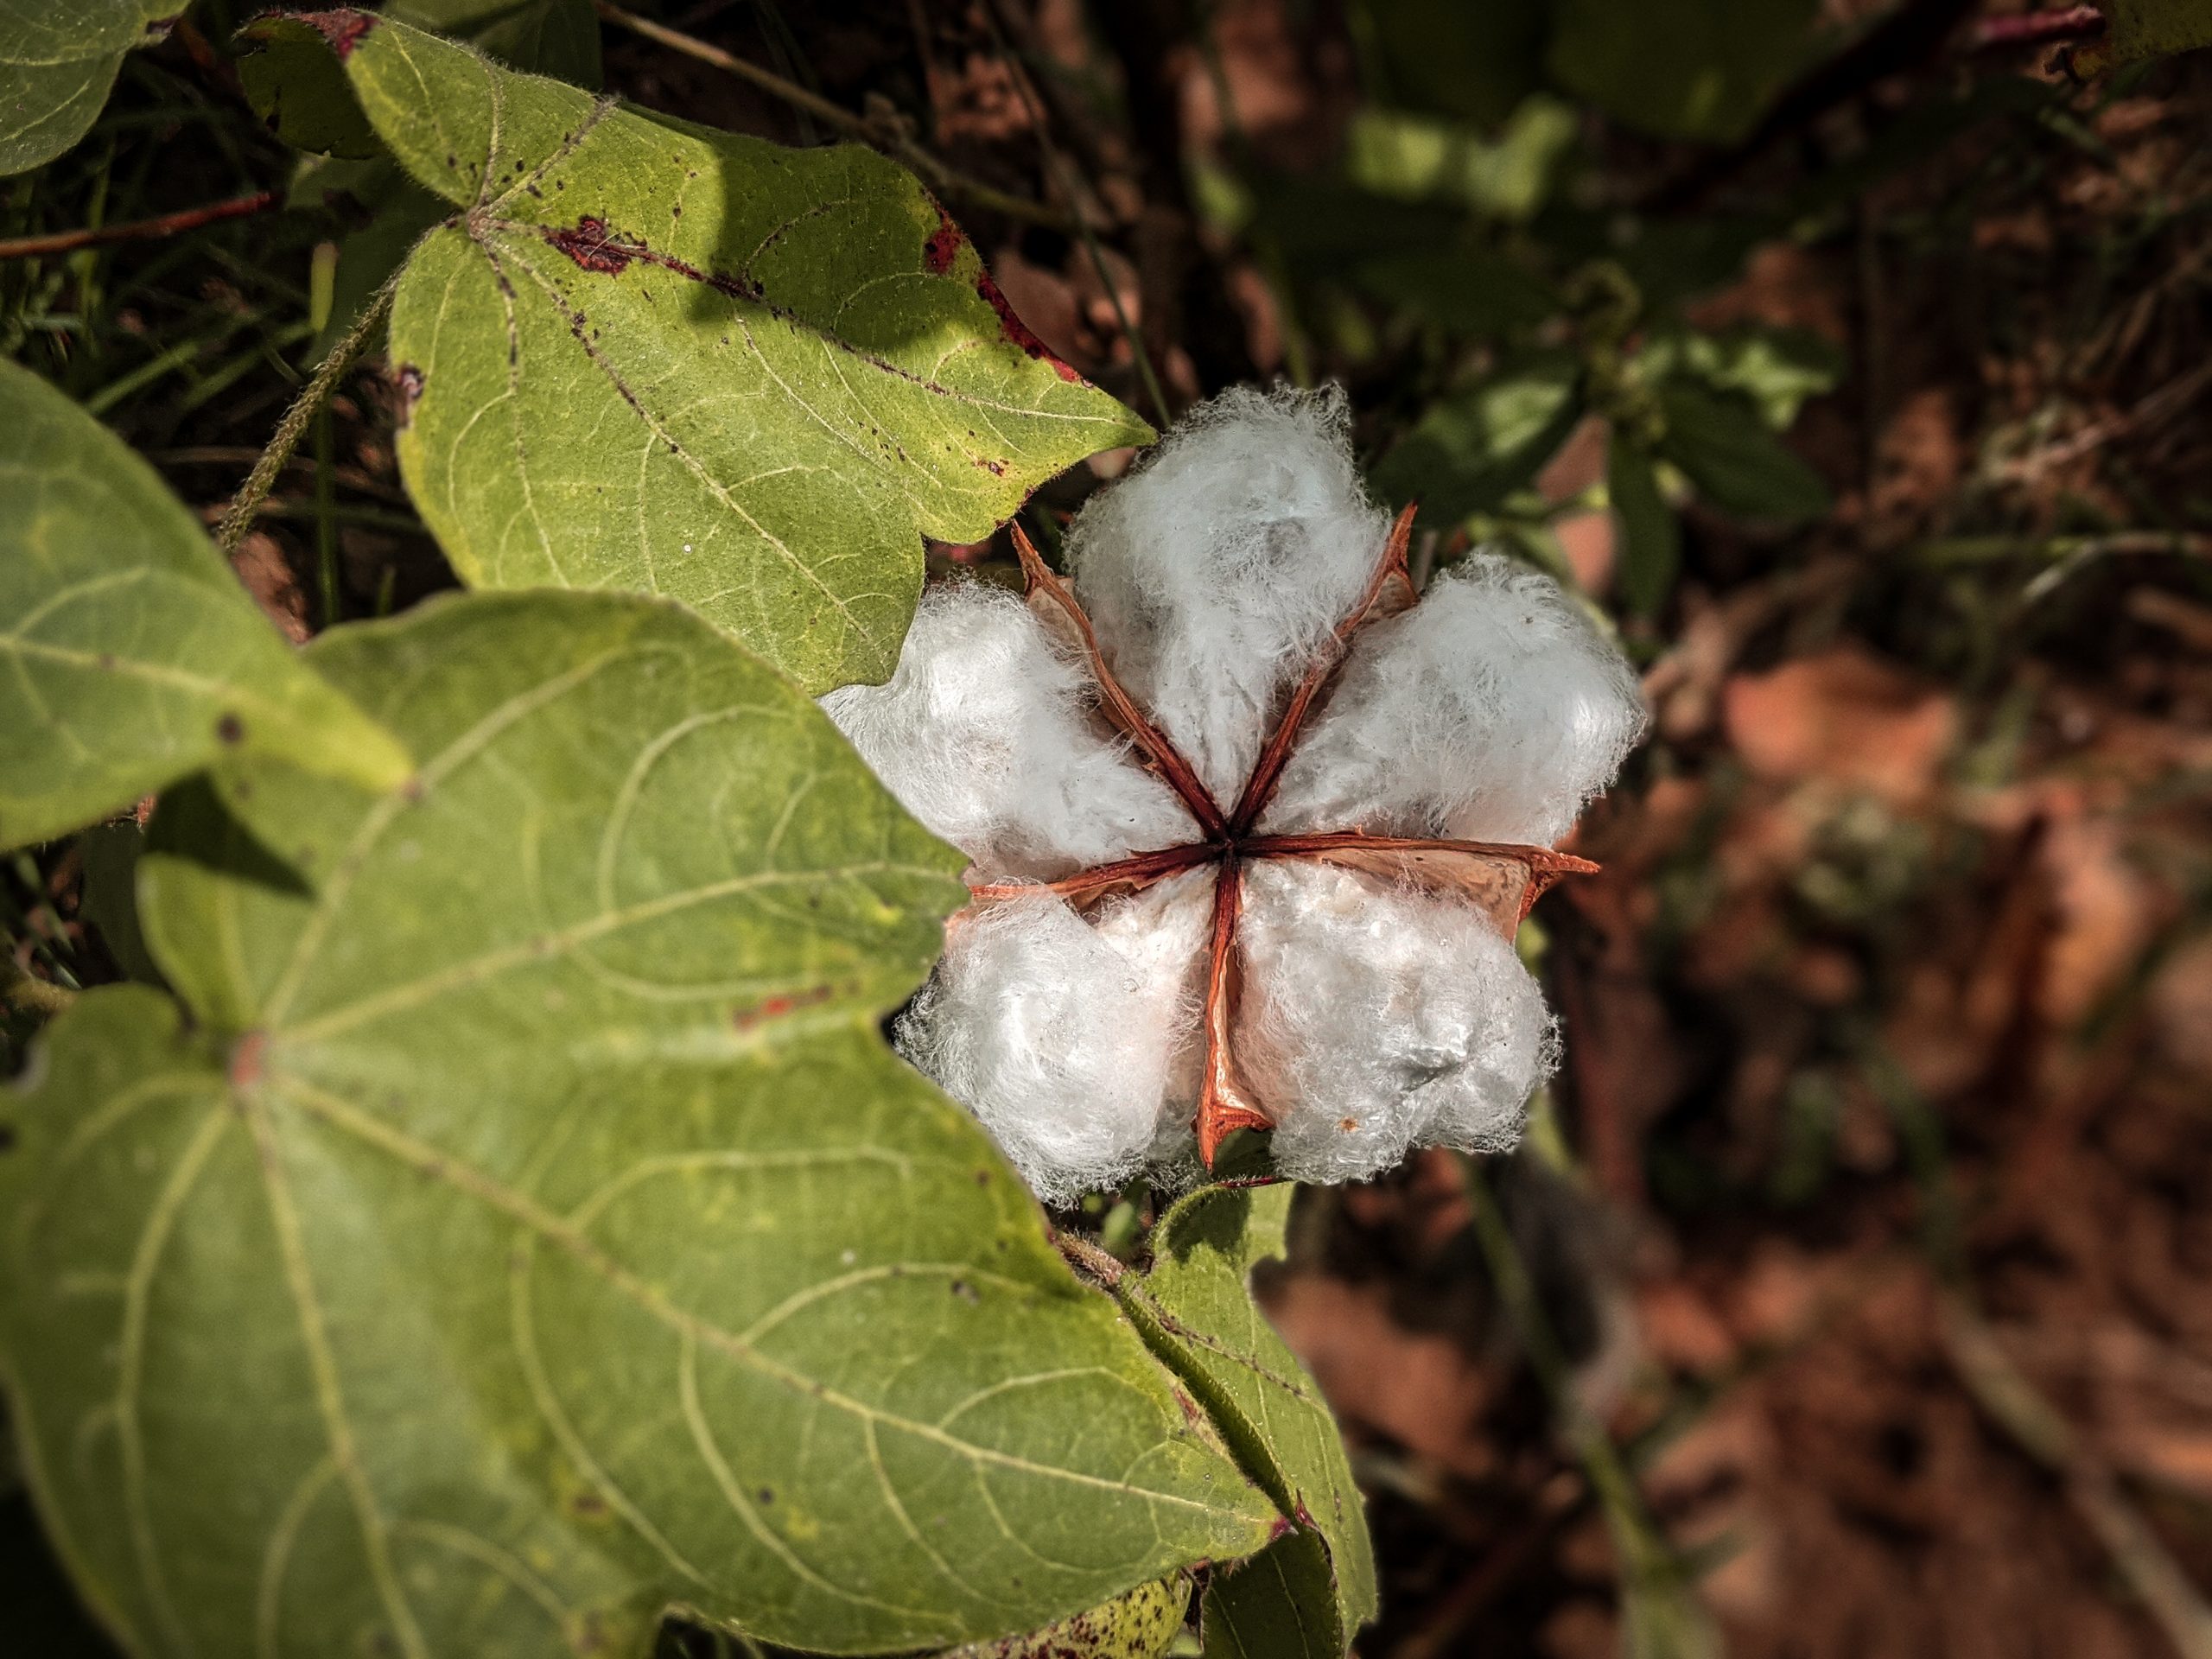 A cotton plant